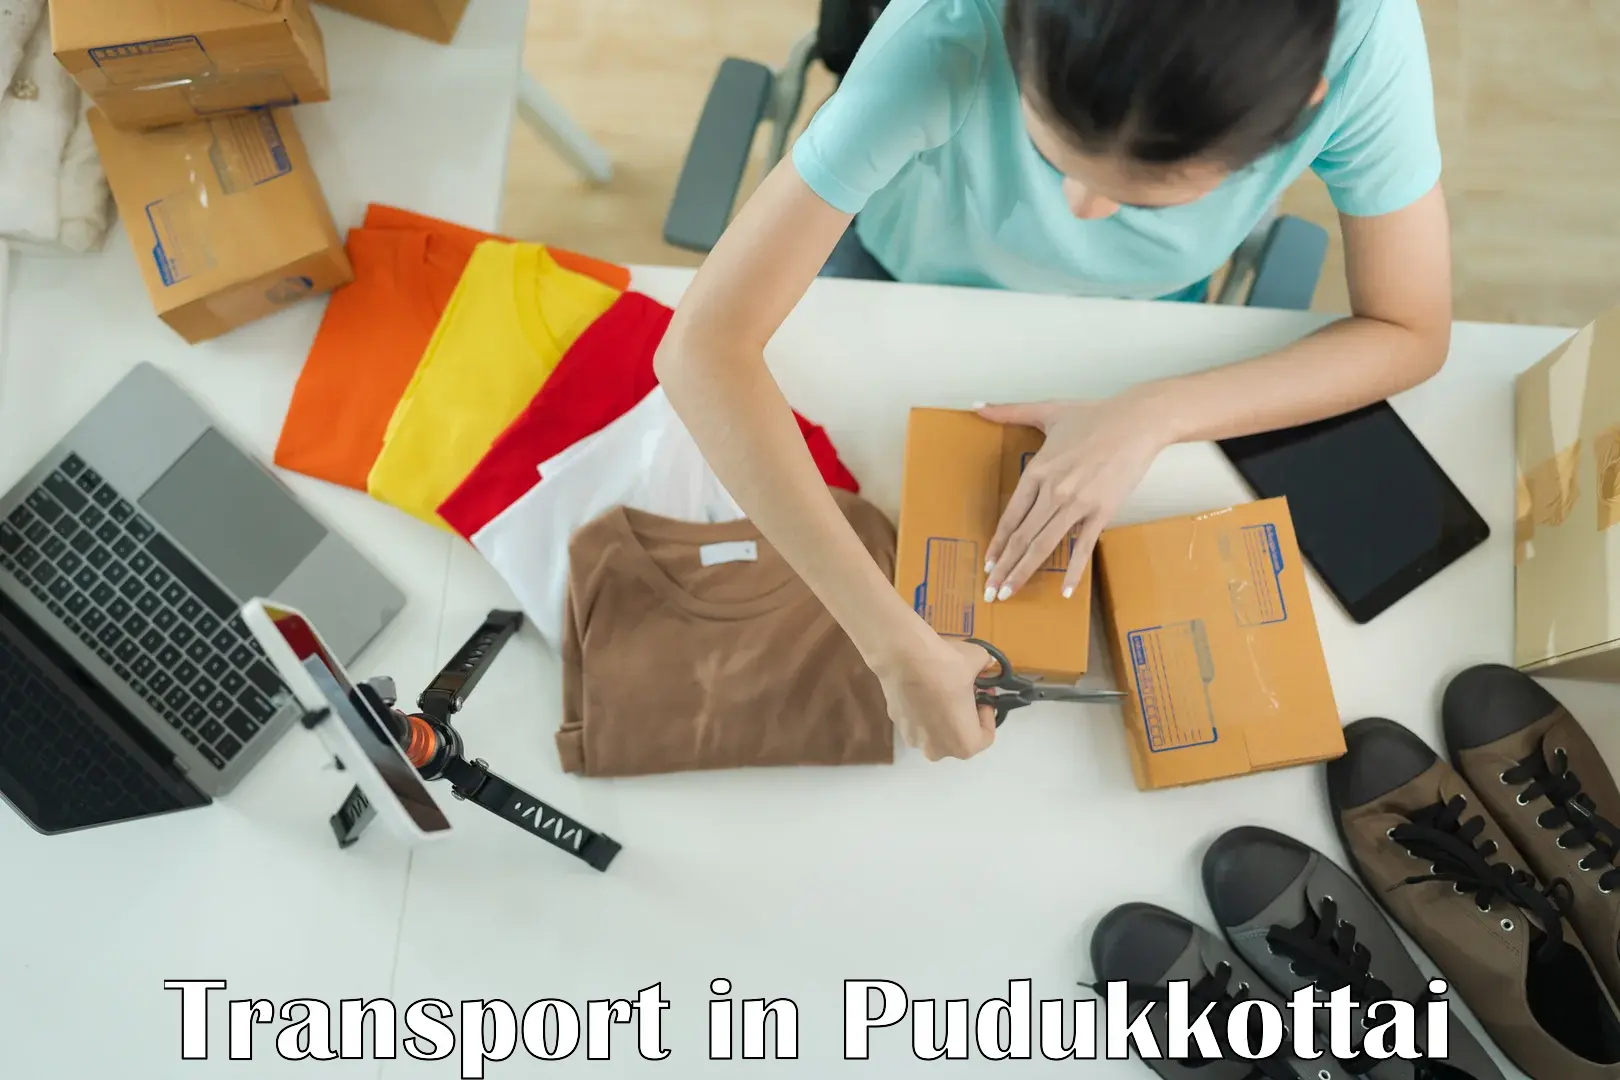 All India transport service in Pudukkottai